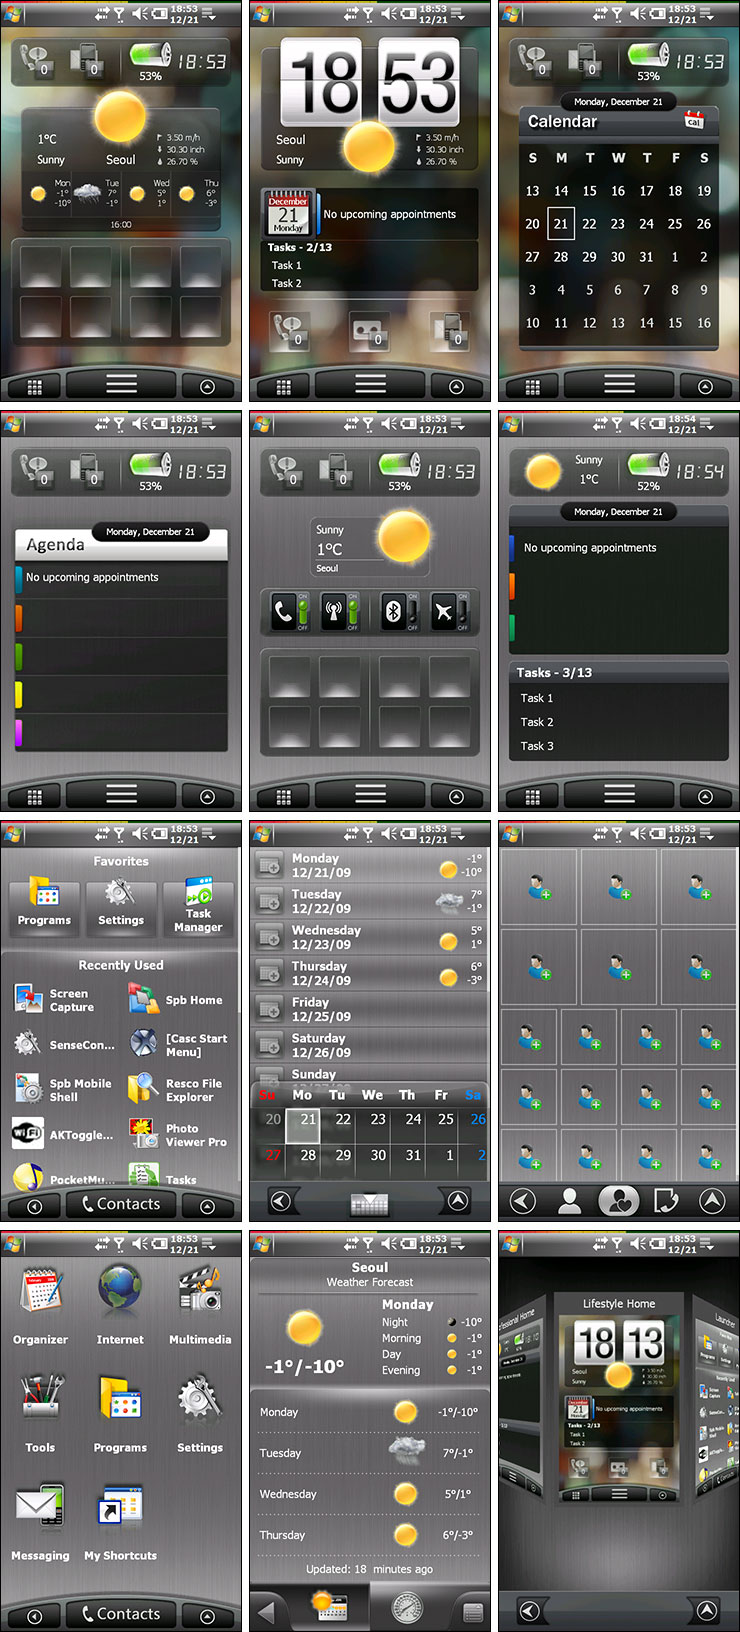 omnia i900 - Mobilesense 3.5.2 20091228.jpg